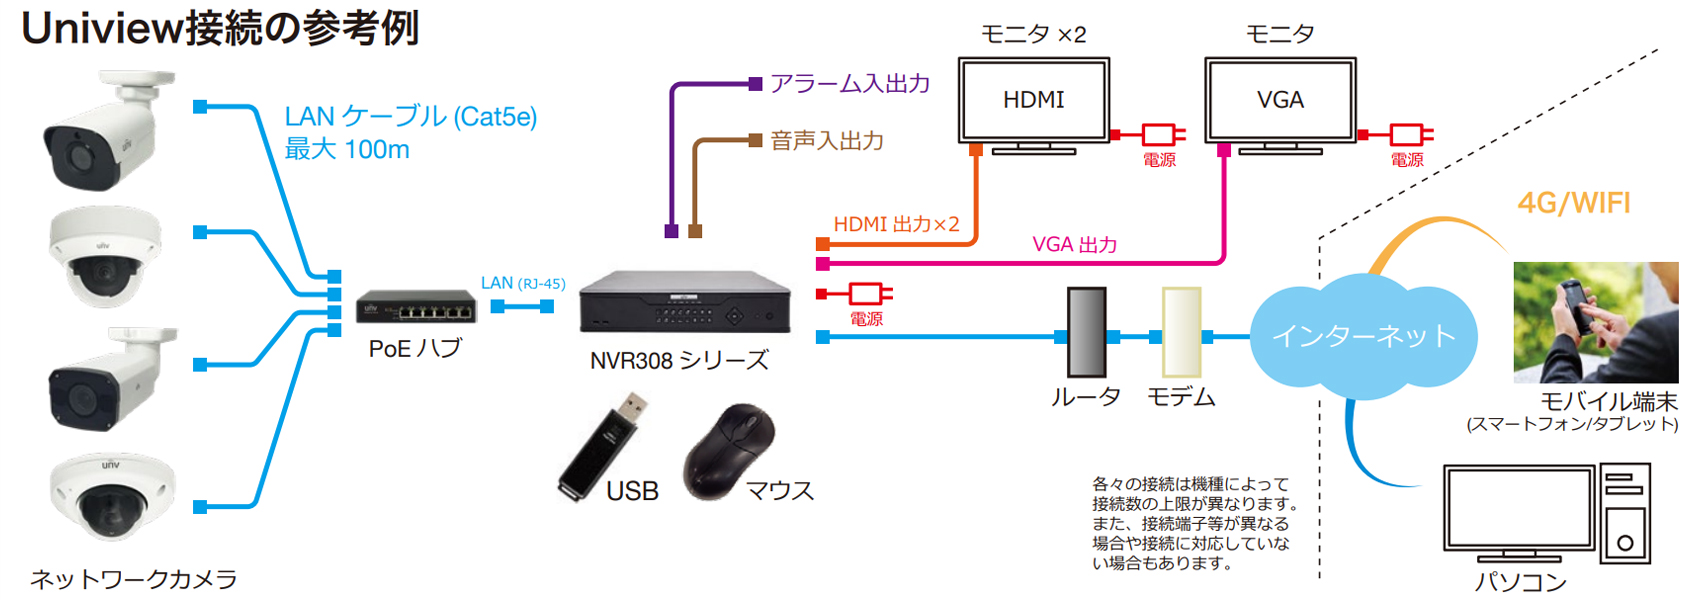 NVR308-64E-Bシステム接続例